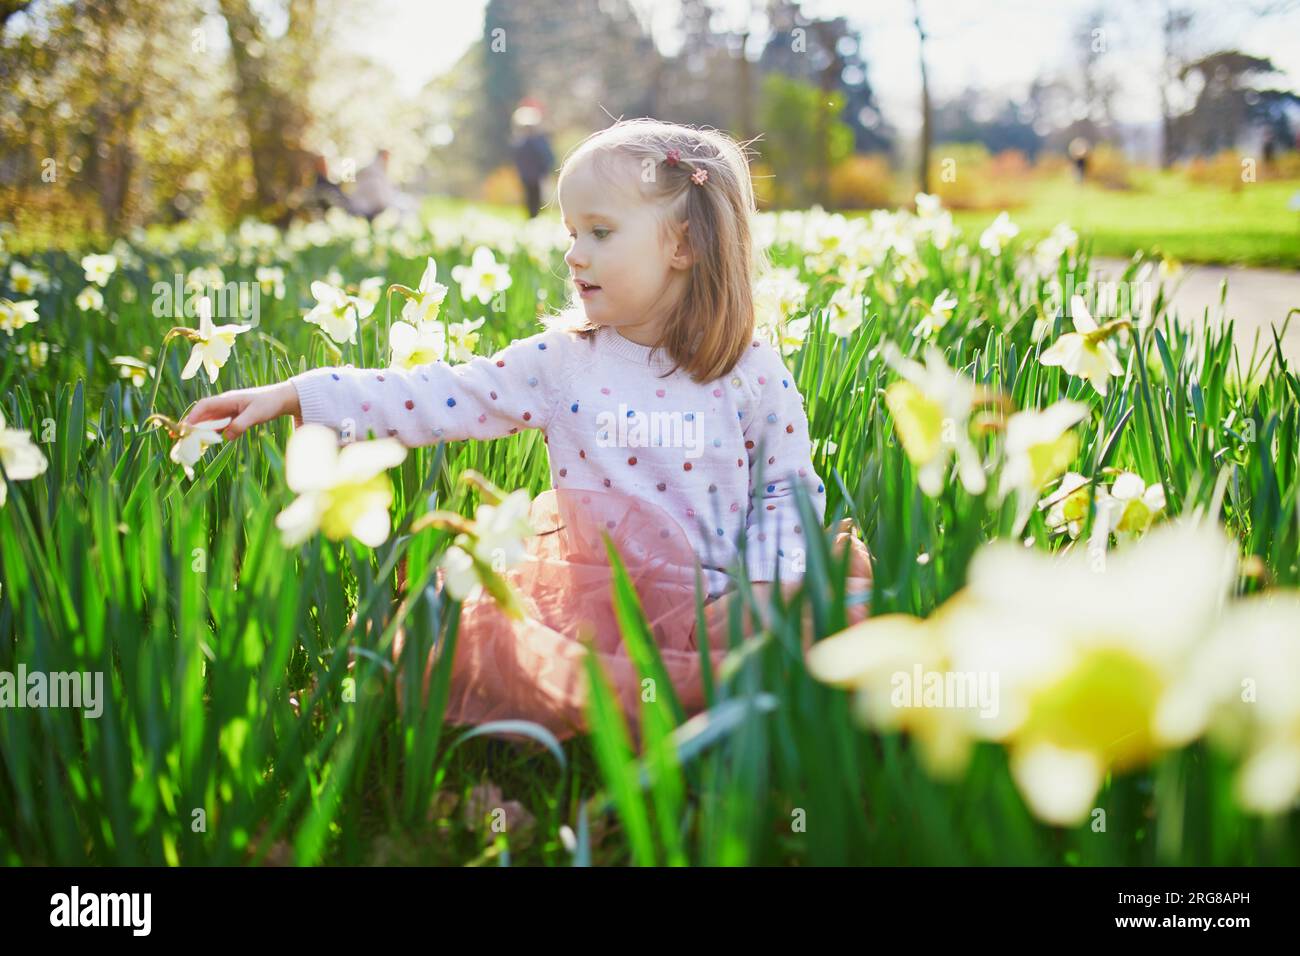 Bambina prescolare seduta sull'erba con narcissi gialli. Bambino che guarda i fiori in una giornata primaverile nel parco. Adorabile bambino che esplora la natura Foto Stock